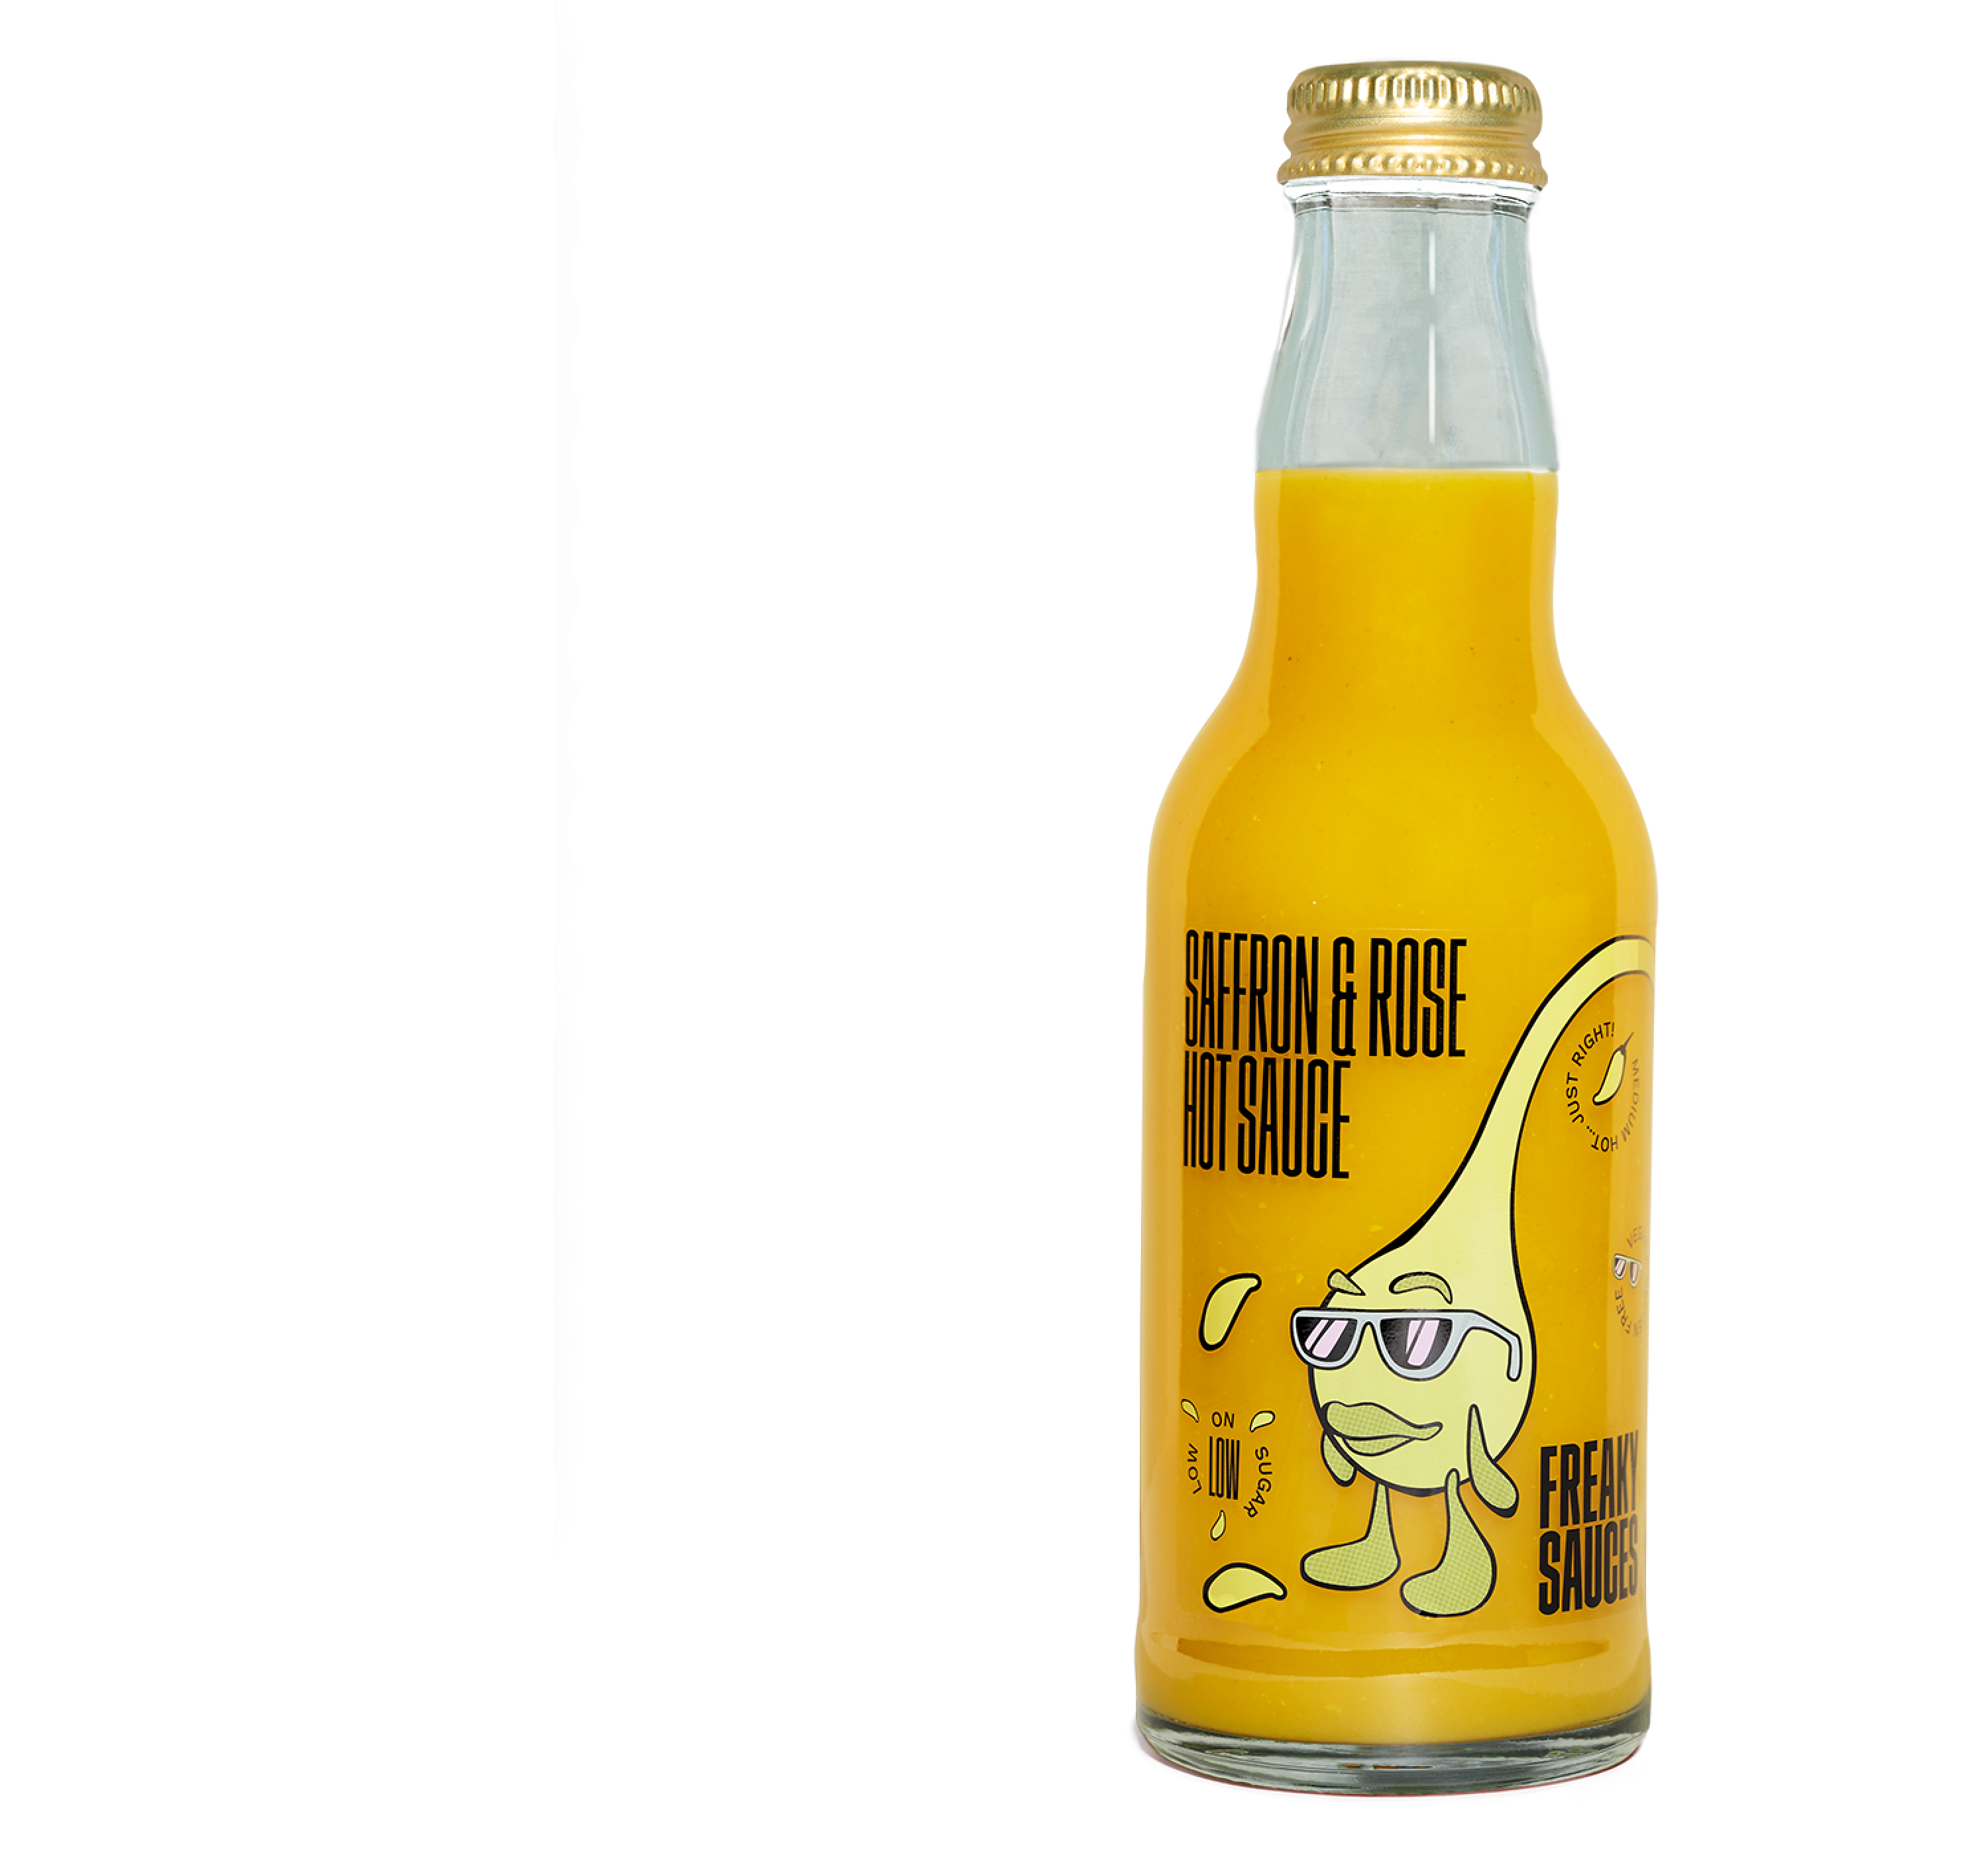 Saffron & Rose bottle